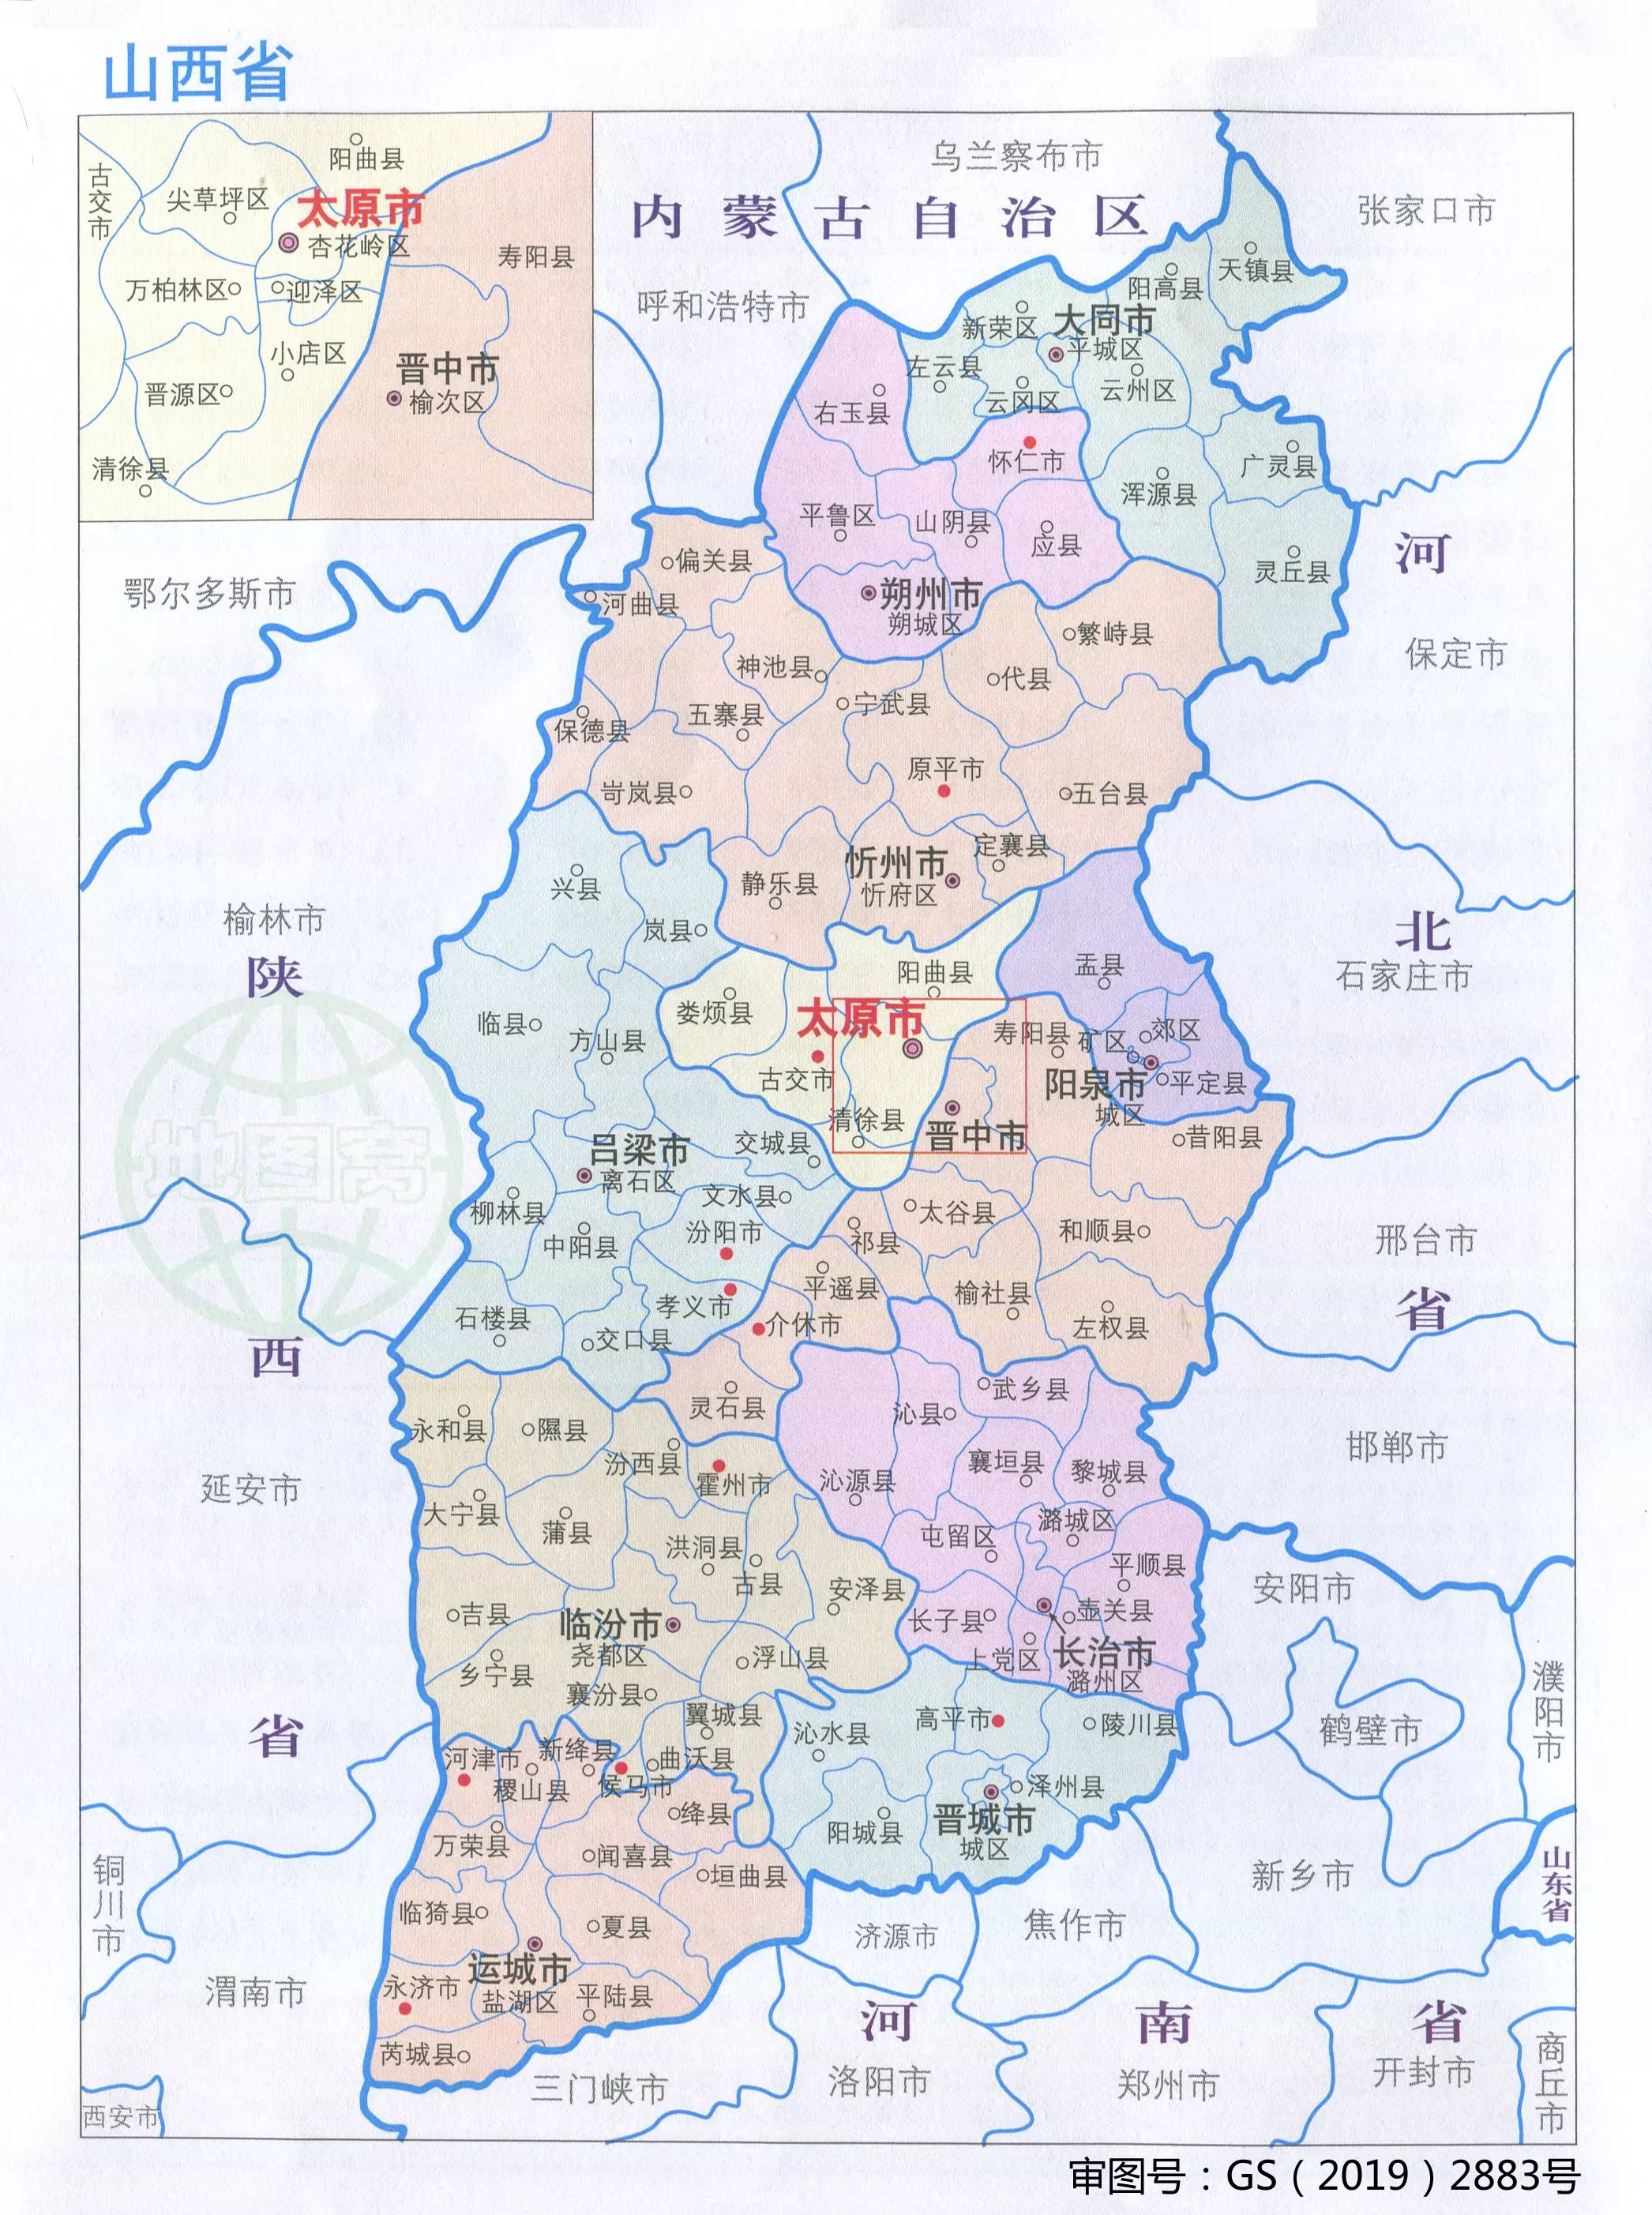 清朝 山西地图全图高清版-历史地图网